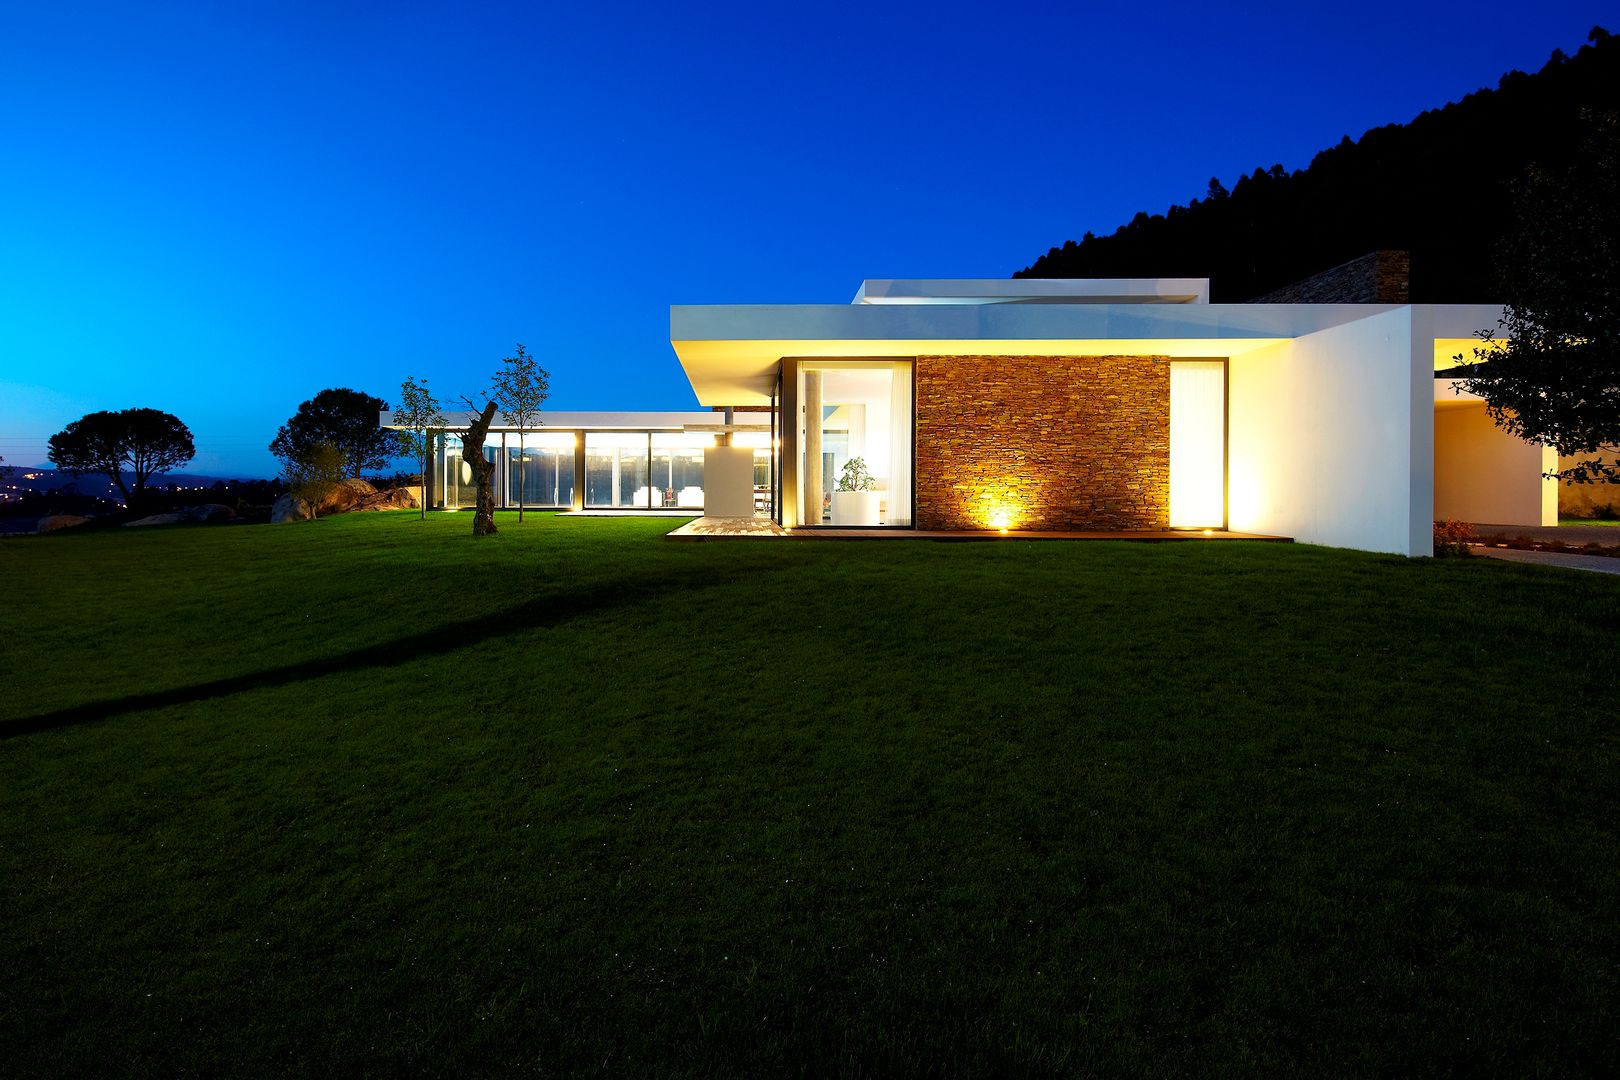 Casa moderna de dimensões generosas e piscina interior, Risco Singular - Arquitectura Lda Risco Singular - Arquitectura Lda منازل